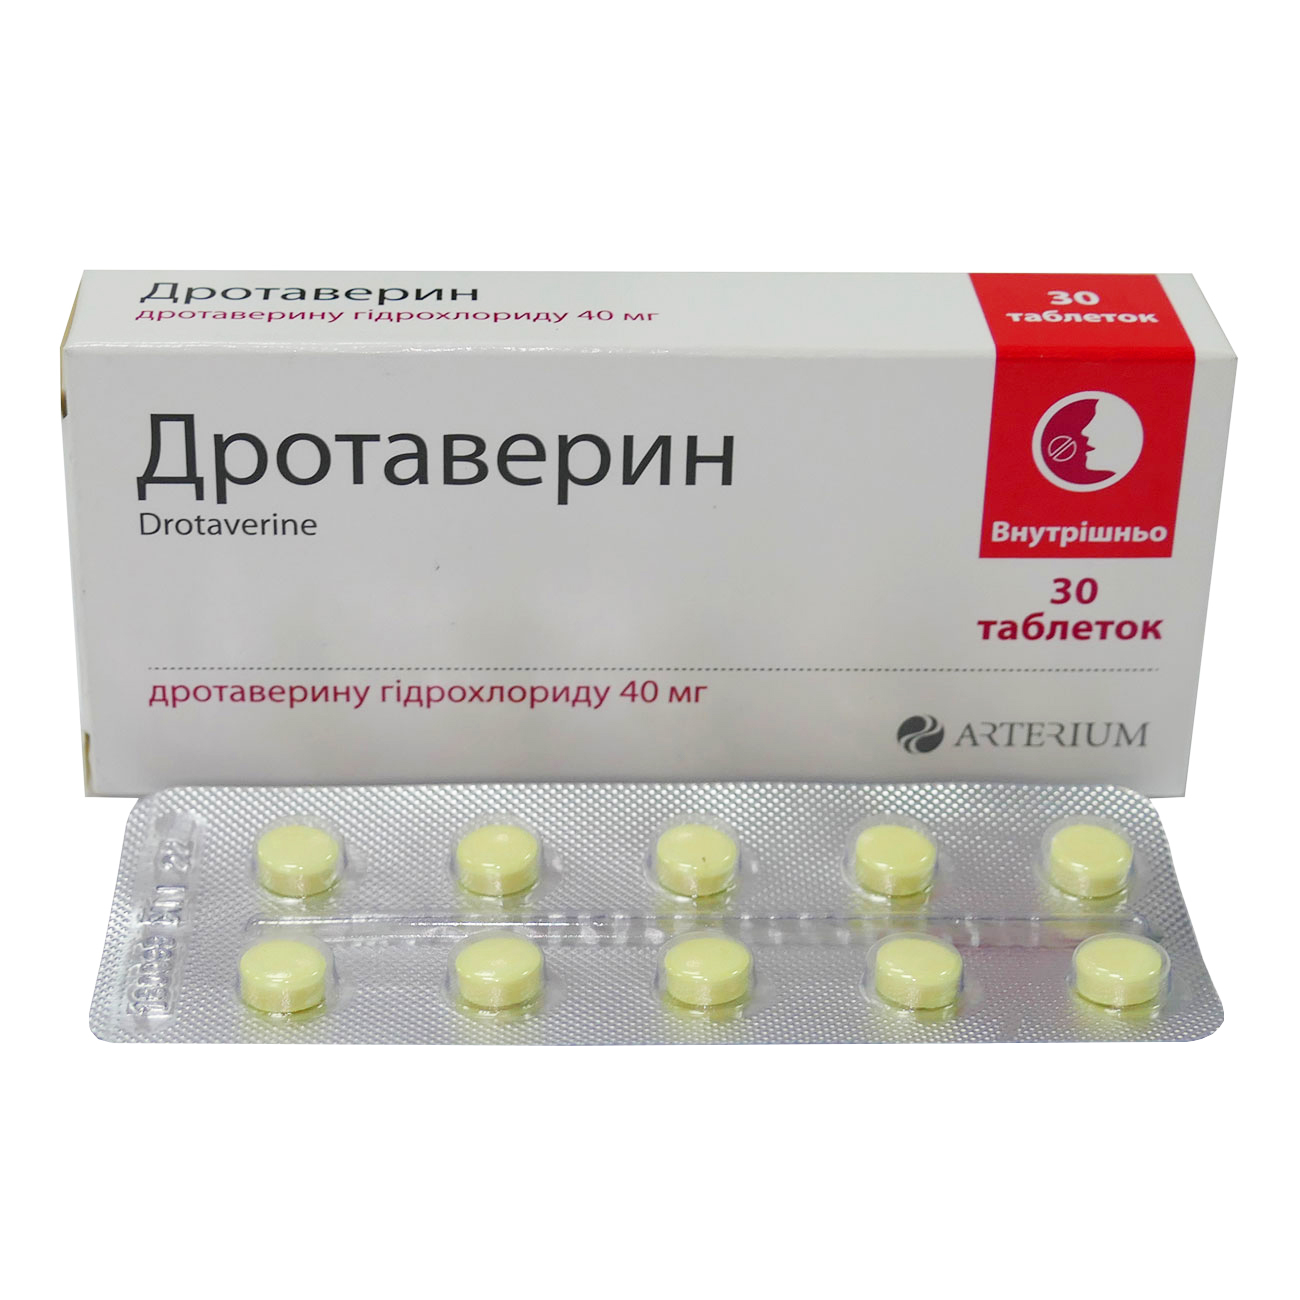 Дротаверин - таблетки: инструкция по применению, дозировка, цена и аналоги